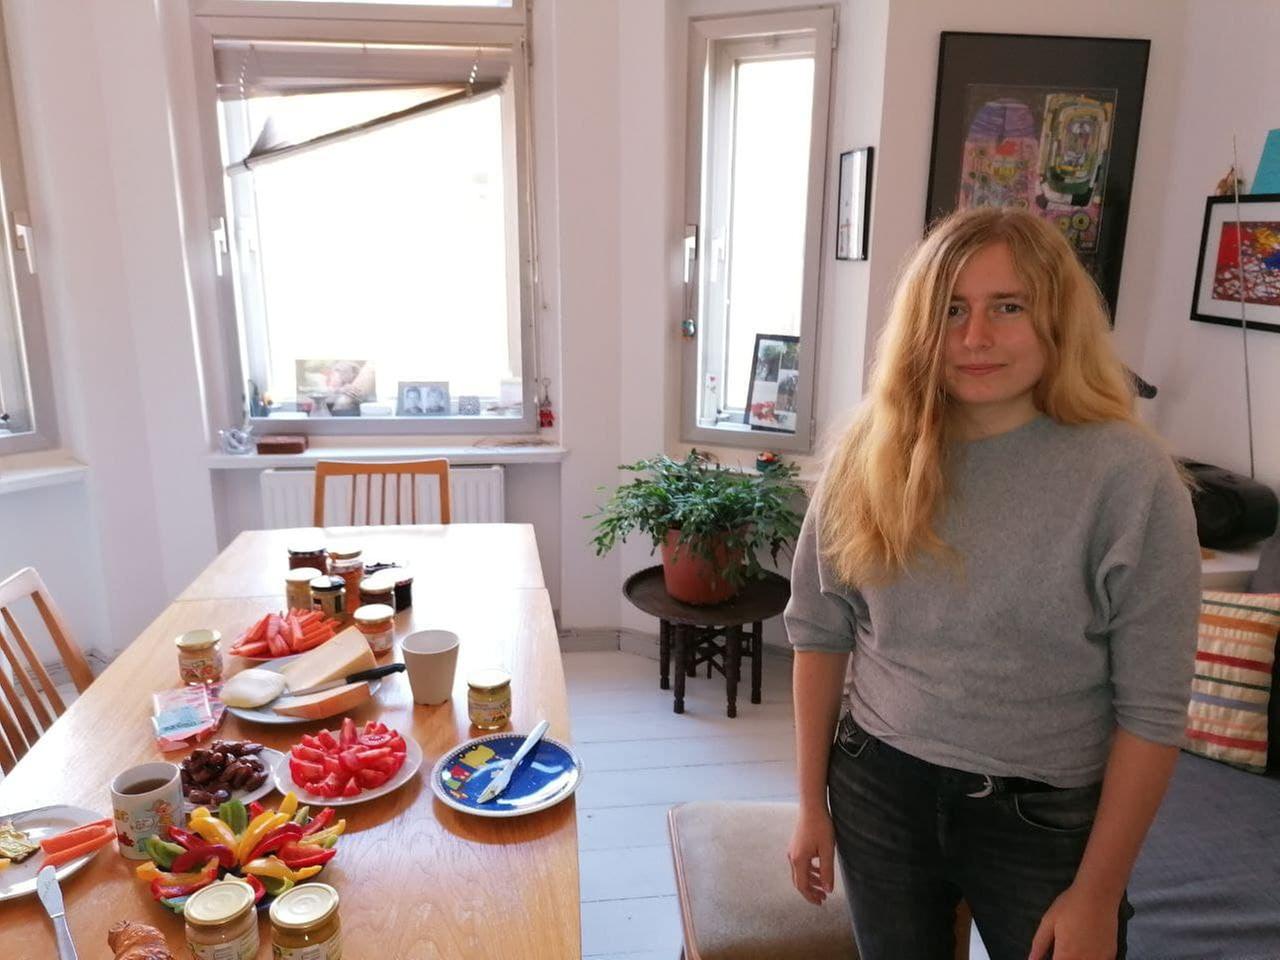 Eine junge Frau mit langen blonden Haaren in grauem Pullover und schwarzer Jeans steht neben einem mit Früchten, Paprikastreifen, Honig und Käse gedeckten Frühstückstisch.